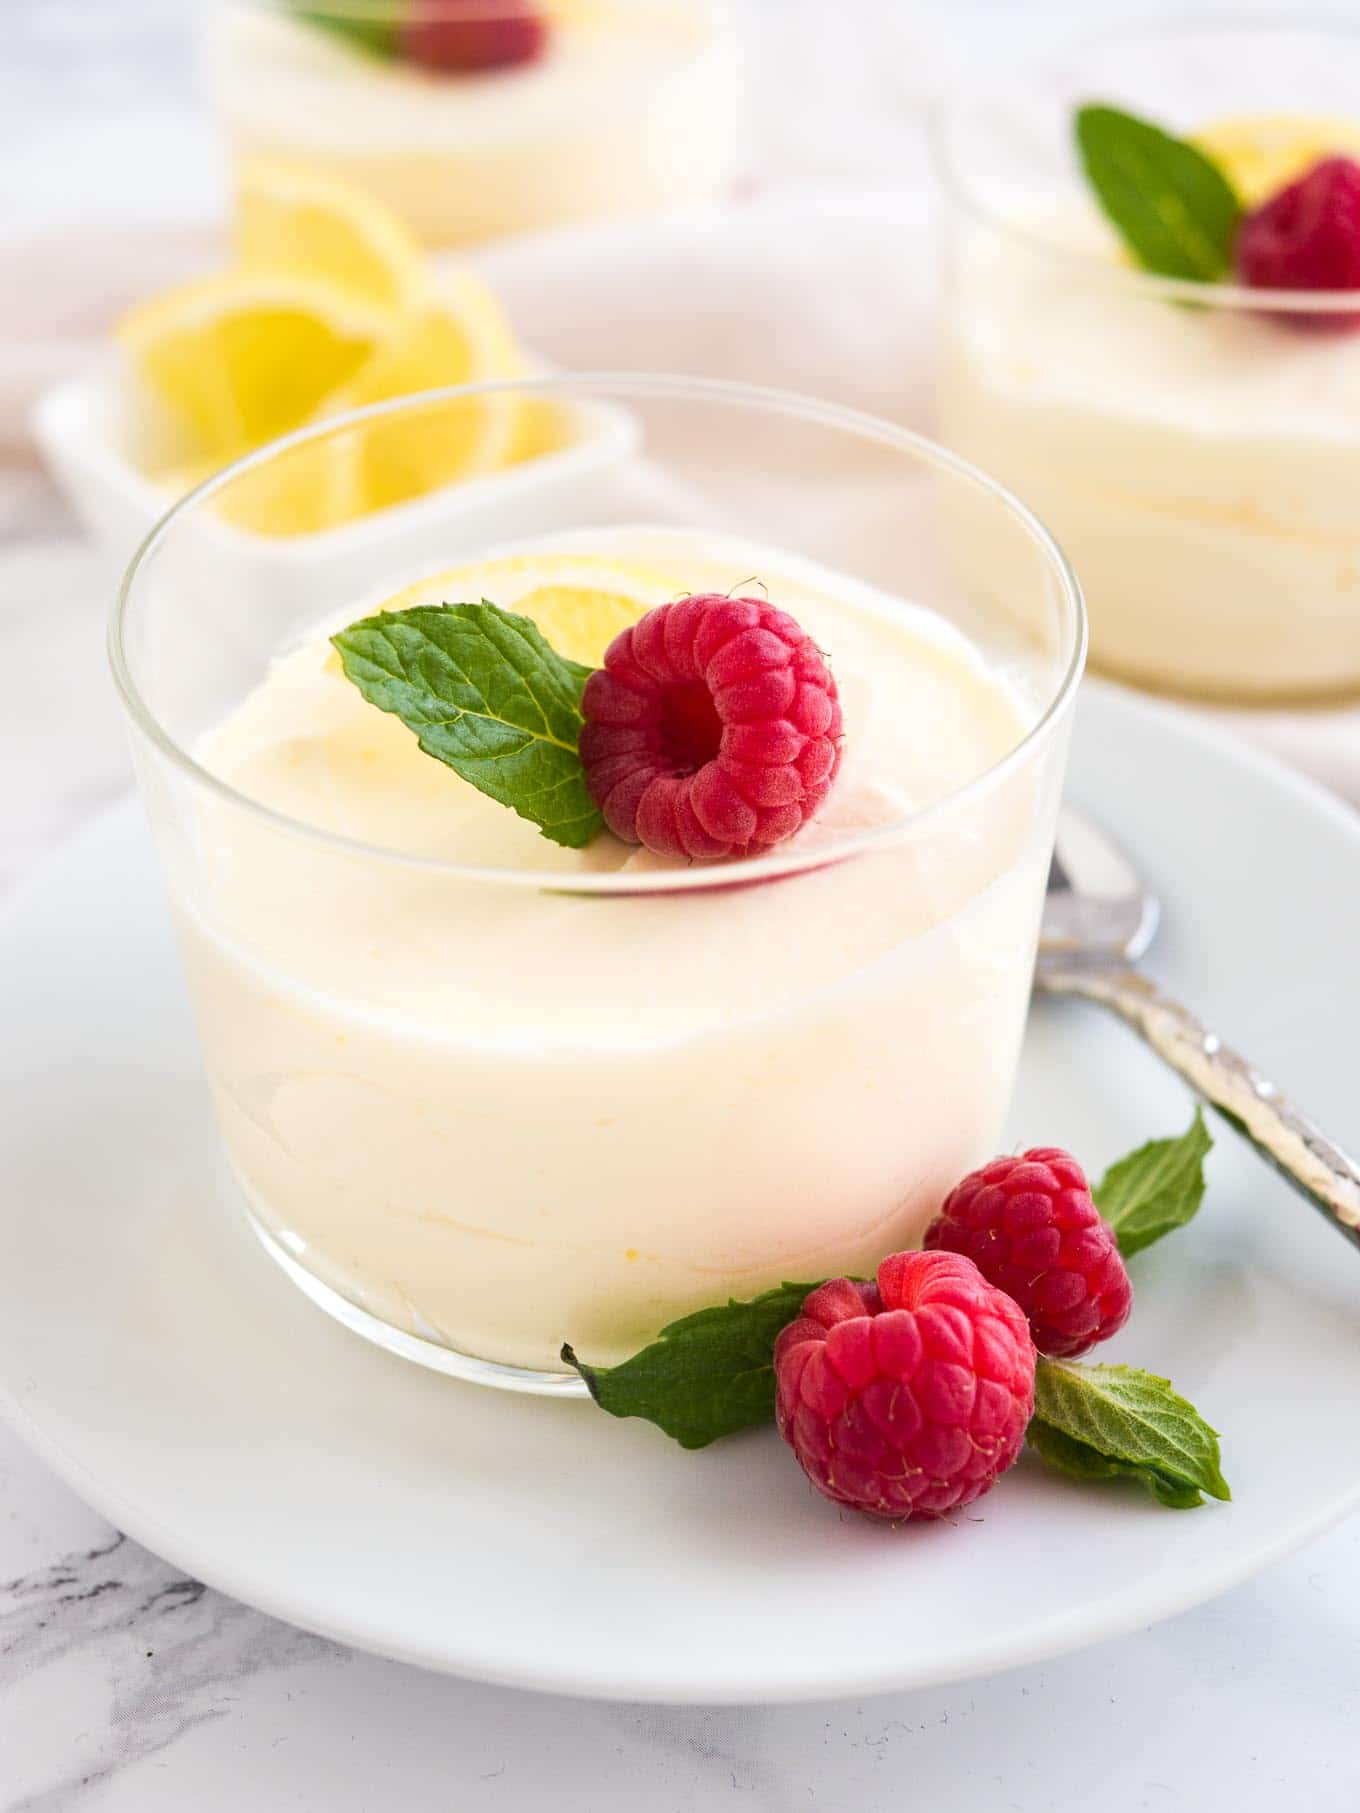 Lemon Mousse Recipe {Easy Summer Dessert} | Plated Cravings